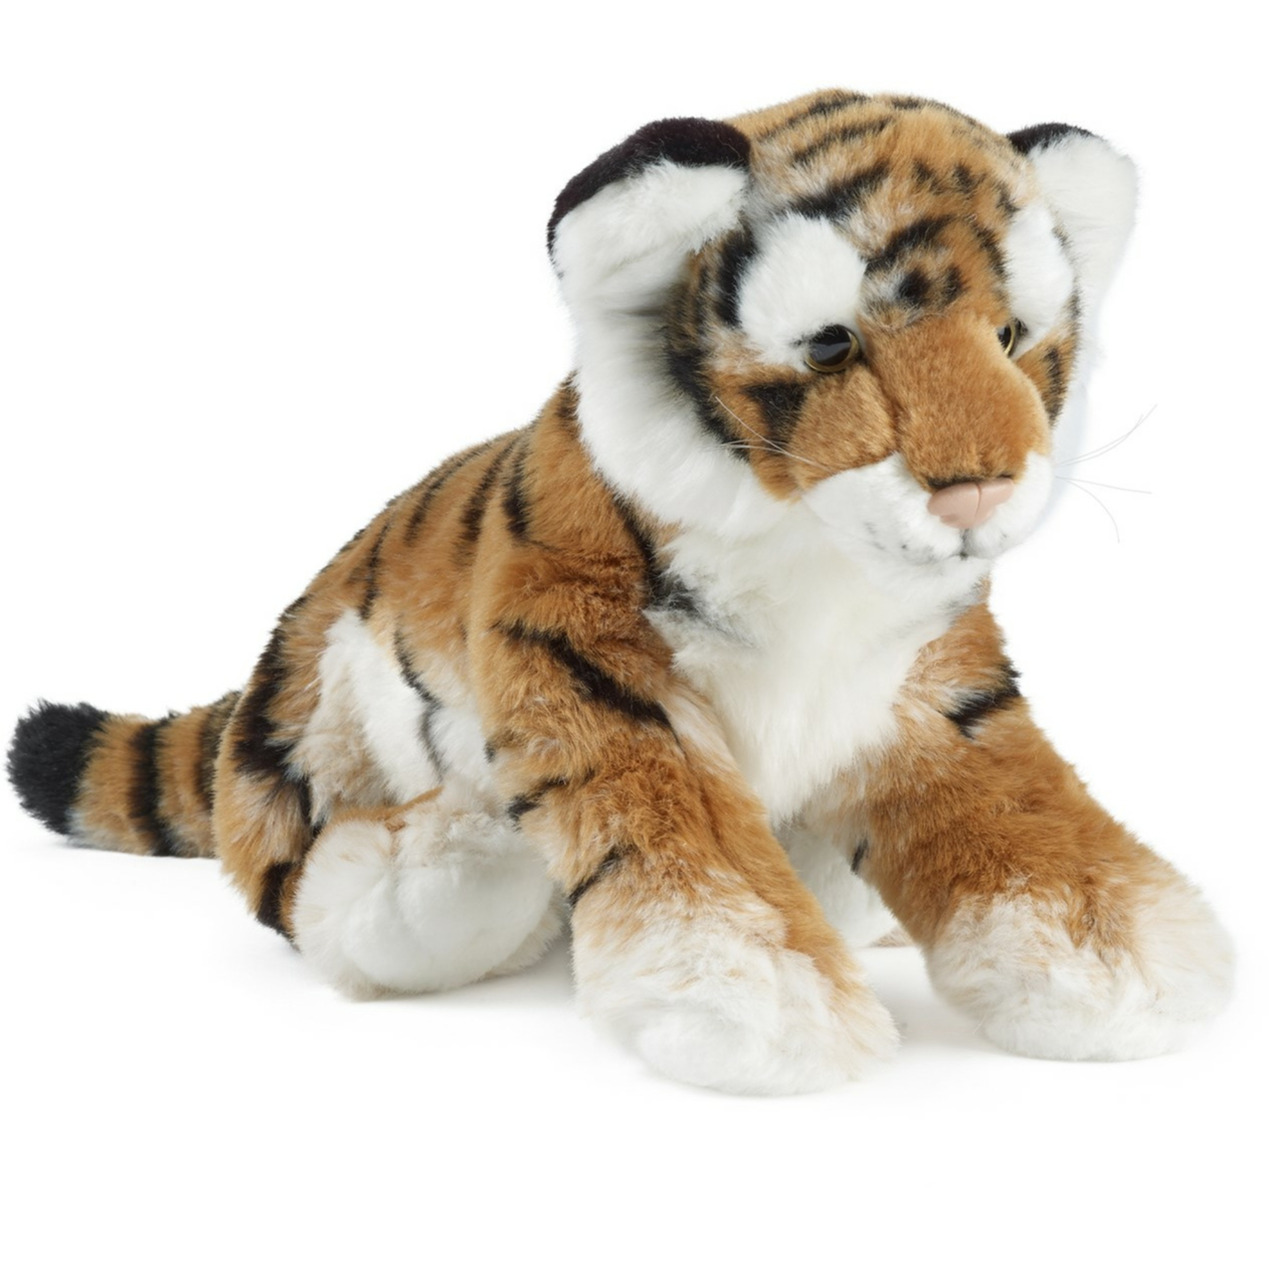 Pluche tijger welpje knuffel 35 cm knuffeldieren